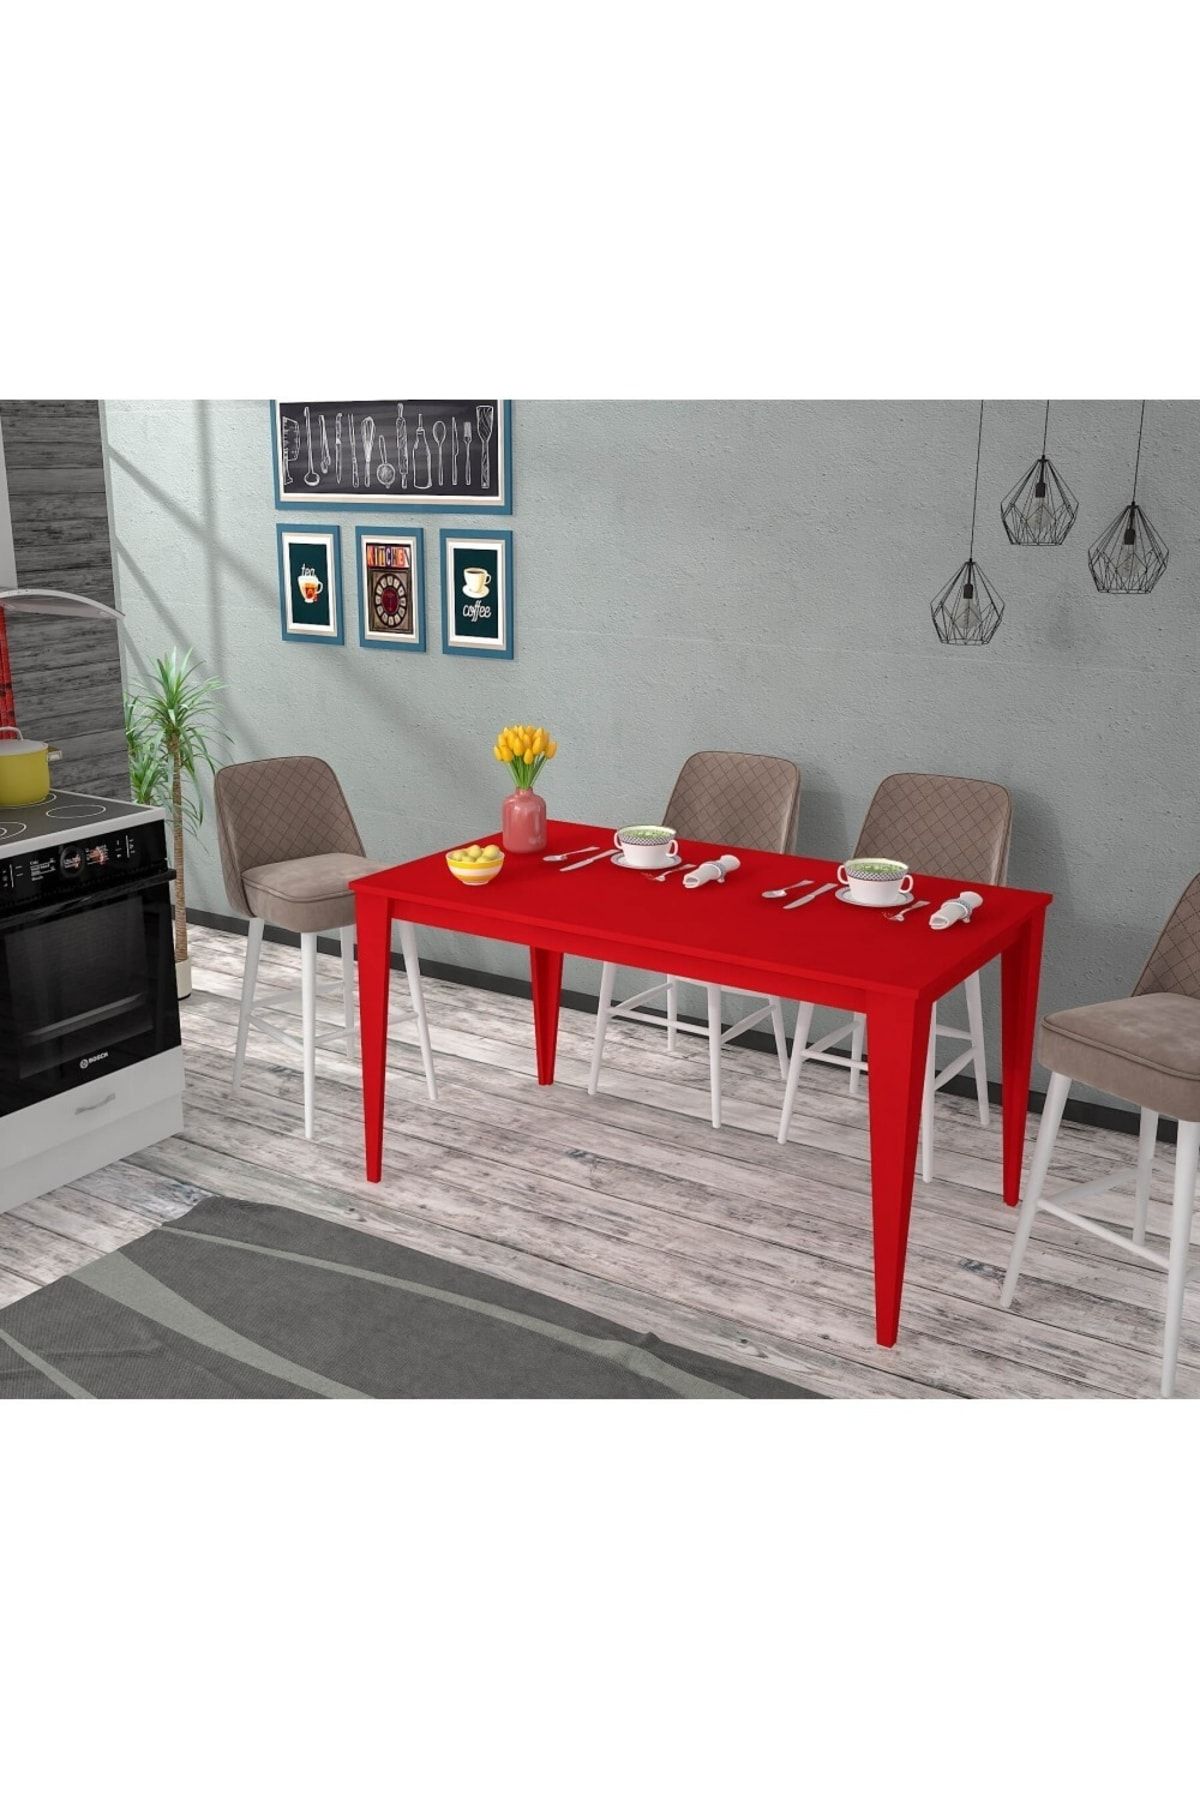 Rafline Yenice 130x70 Mutfak Masası Kırmızı